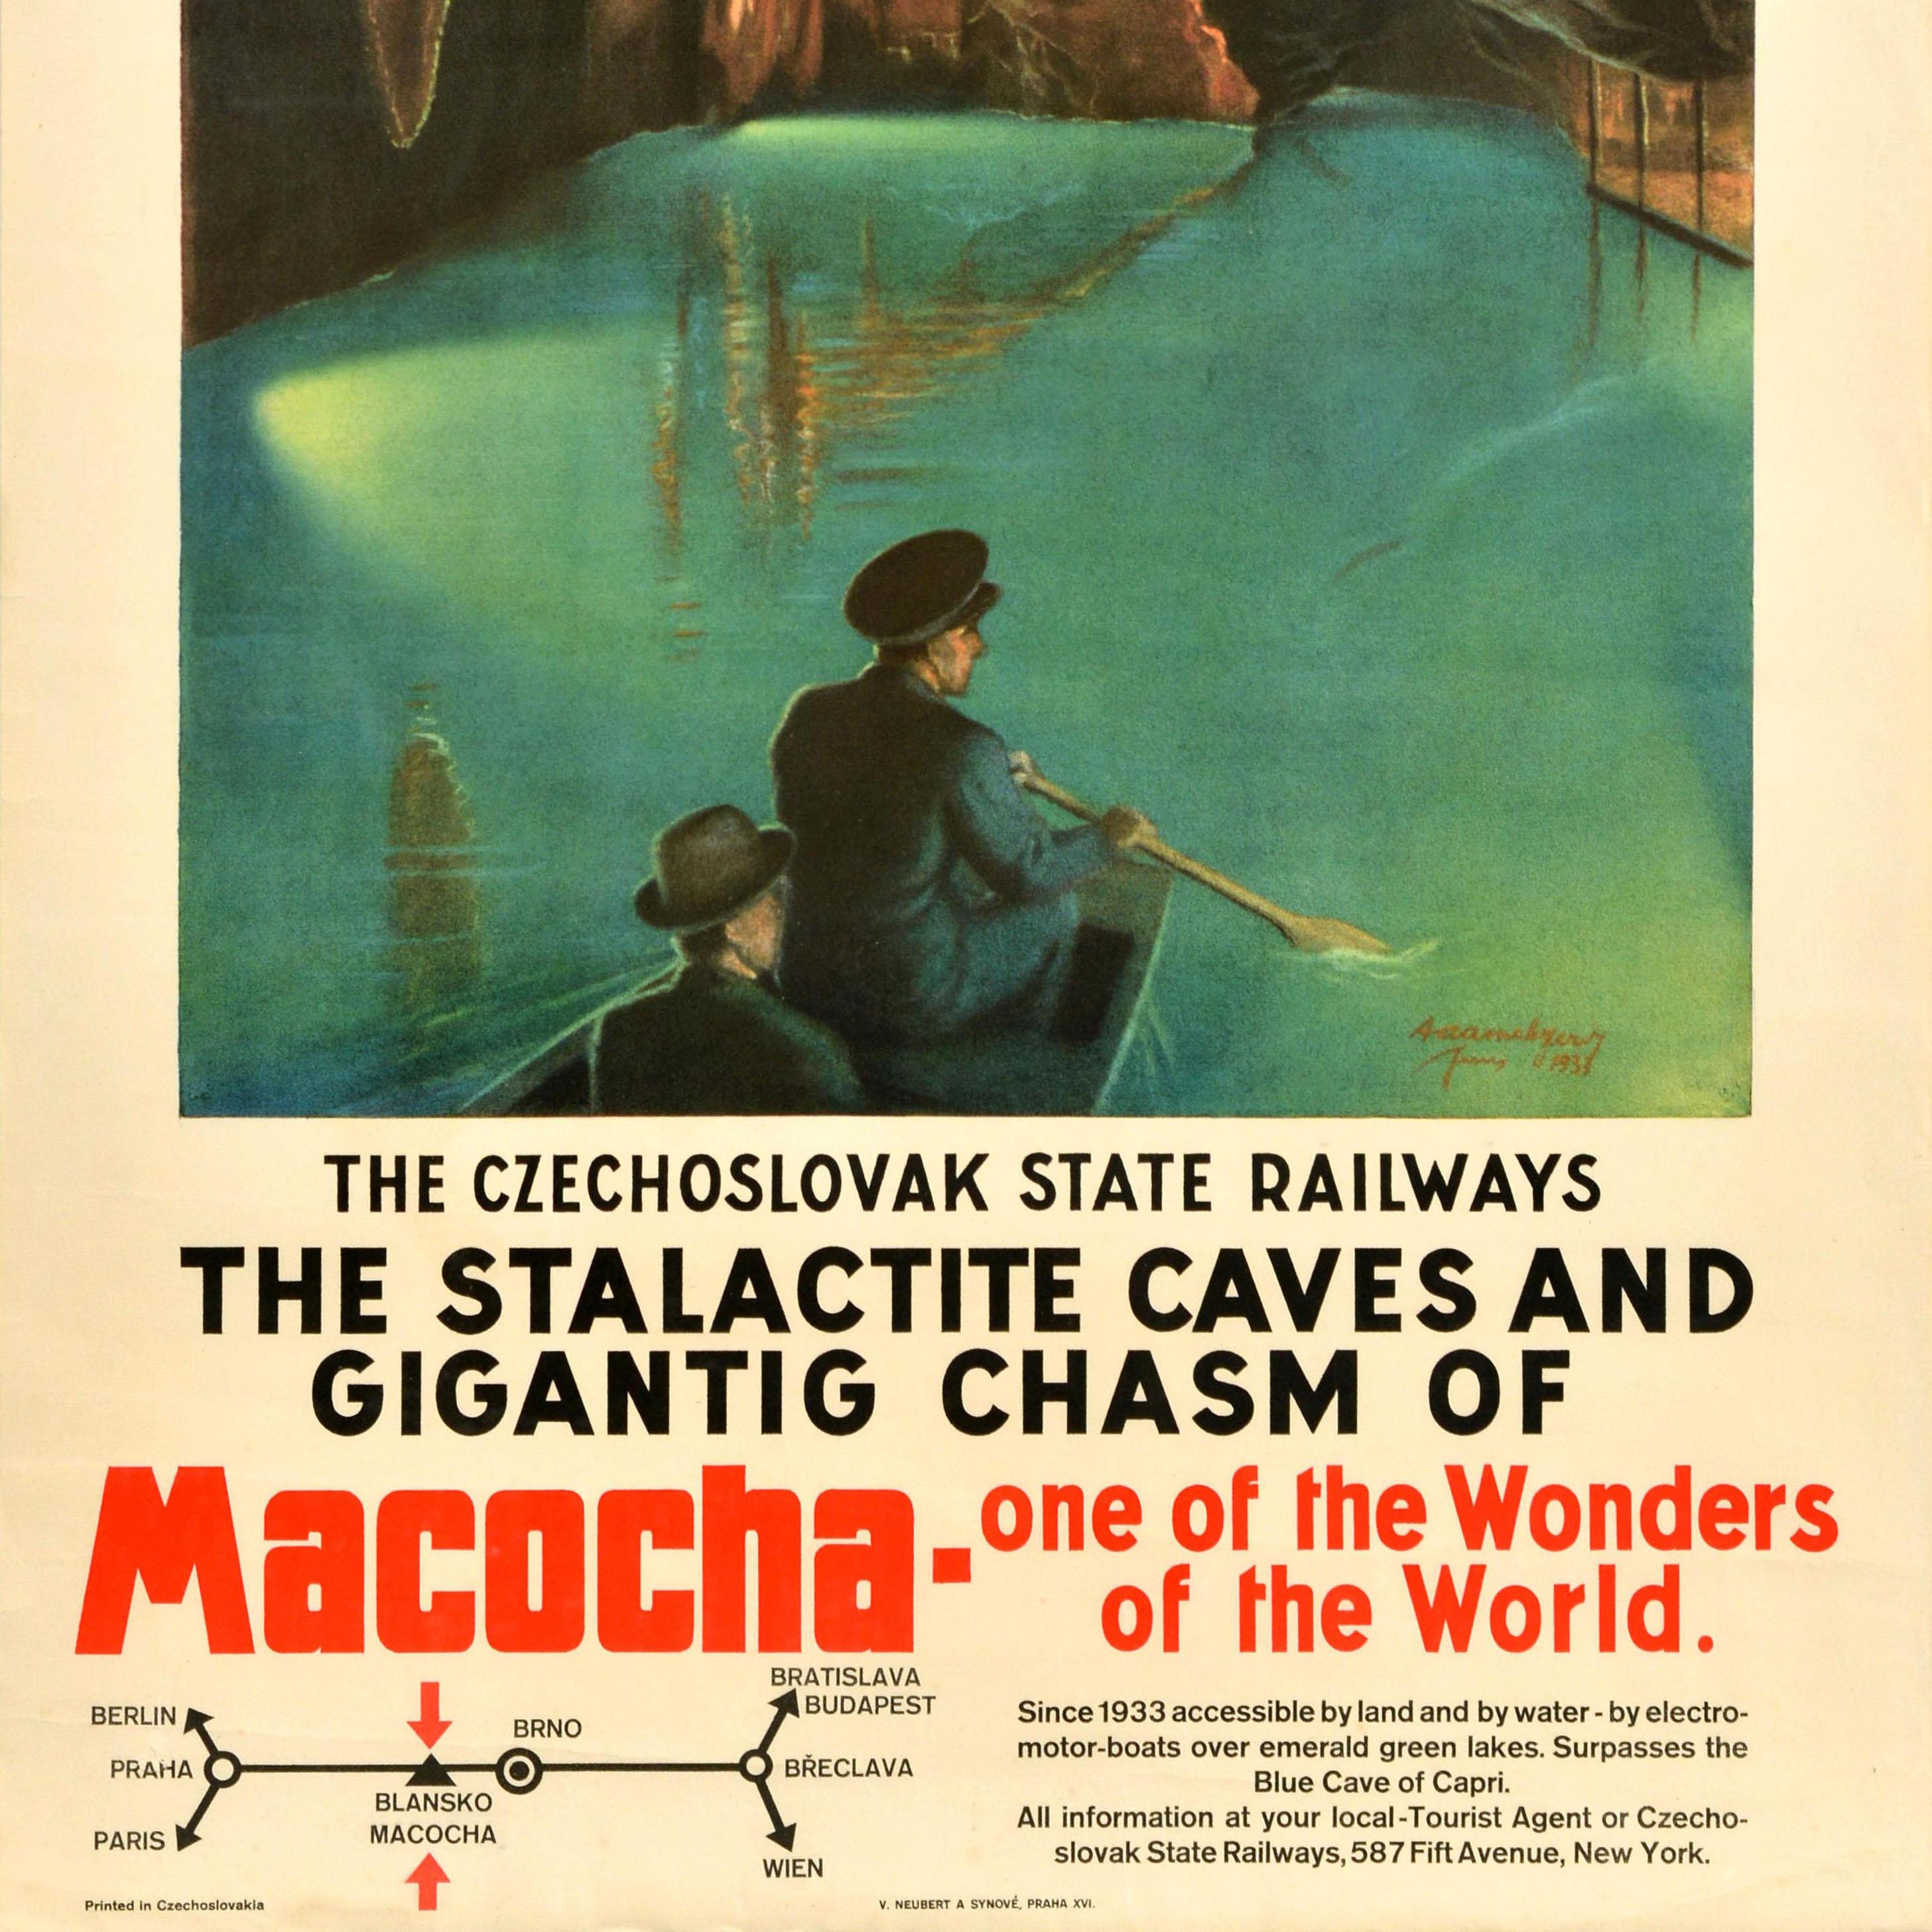 Original Vintage Zugreiseplakat - Die Tschechoslowakische Staatsbahn Die Tropfsteinhöhlen und die gigantische Schlucht von Macocha, eines der Weltwunder - mit einem malerischen Bild von Menschen in einem Ruderboot in der Höhle unter den Stalaktiten,